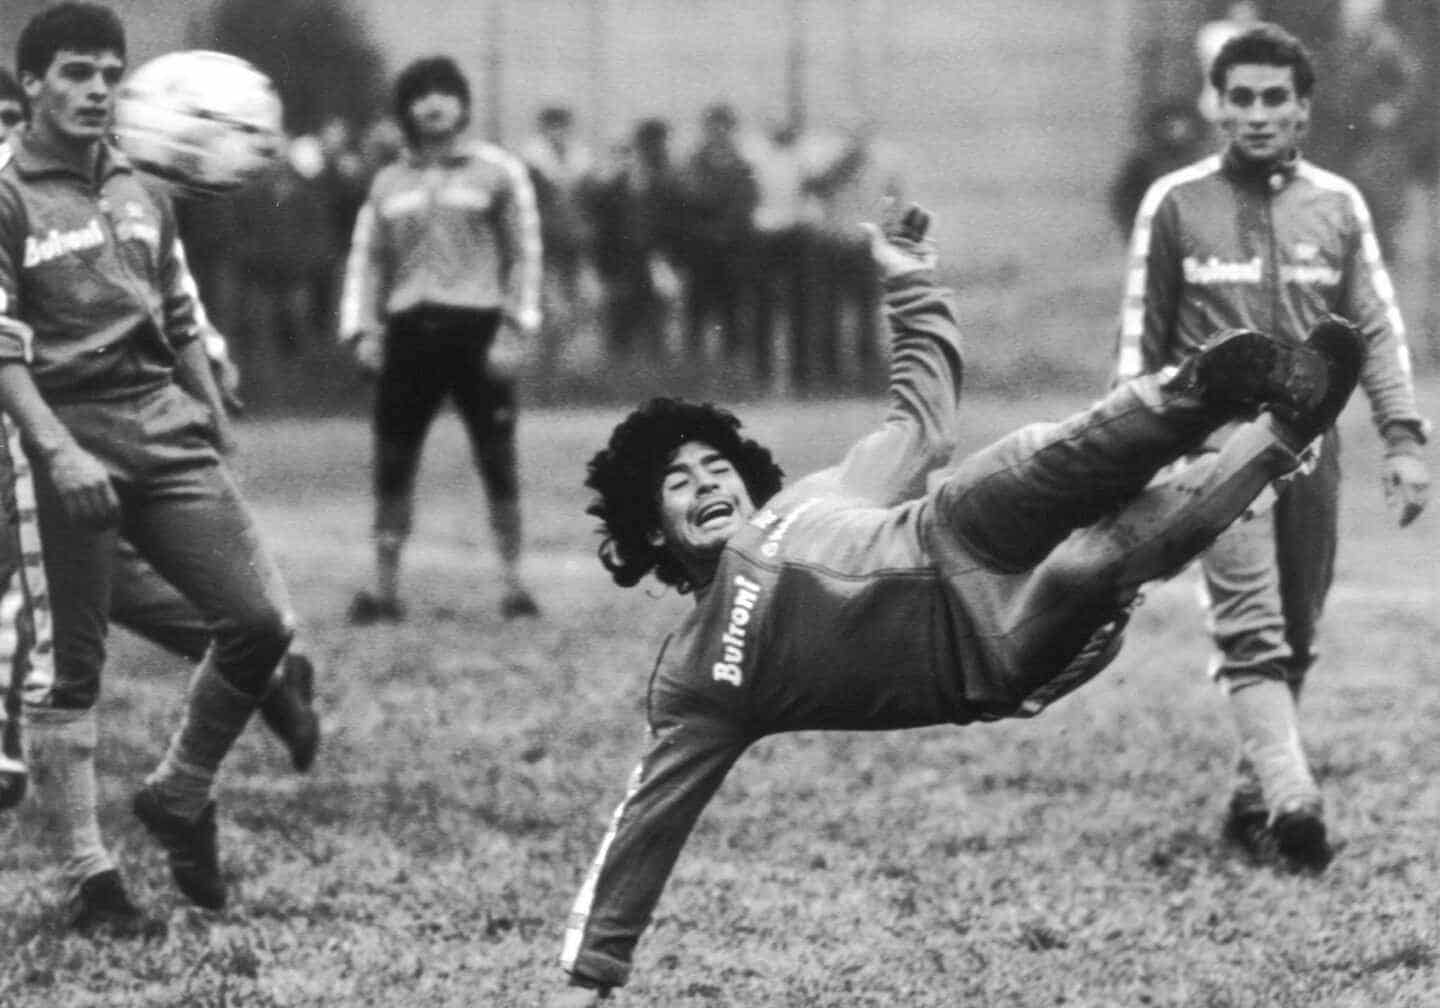 Del gol del siglo a sus últimos pasos en la Bombonera: Maradona en seis vídeos